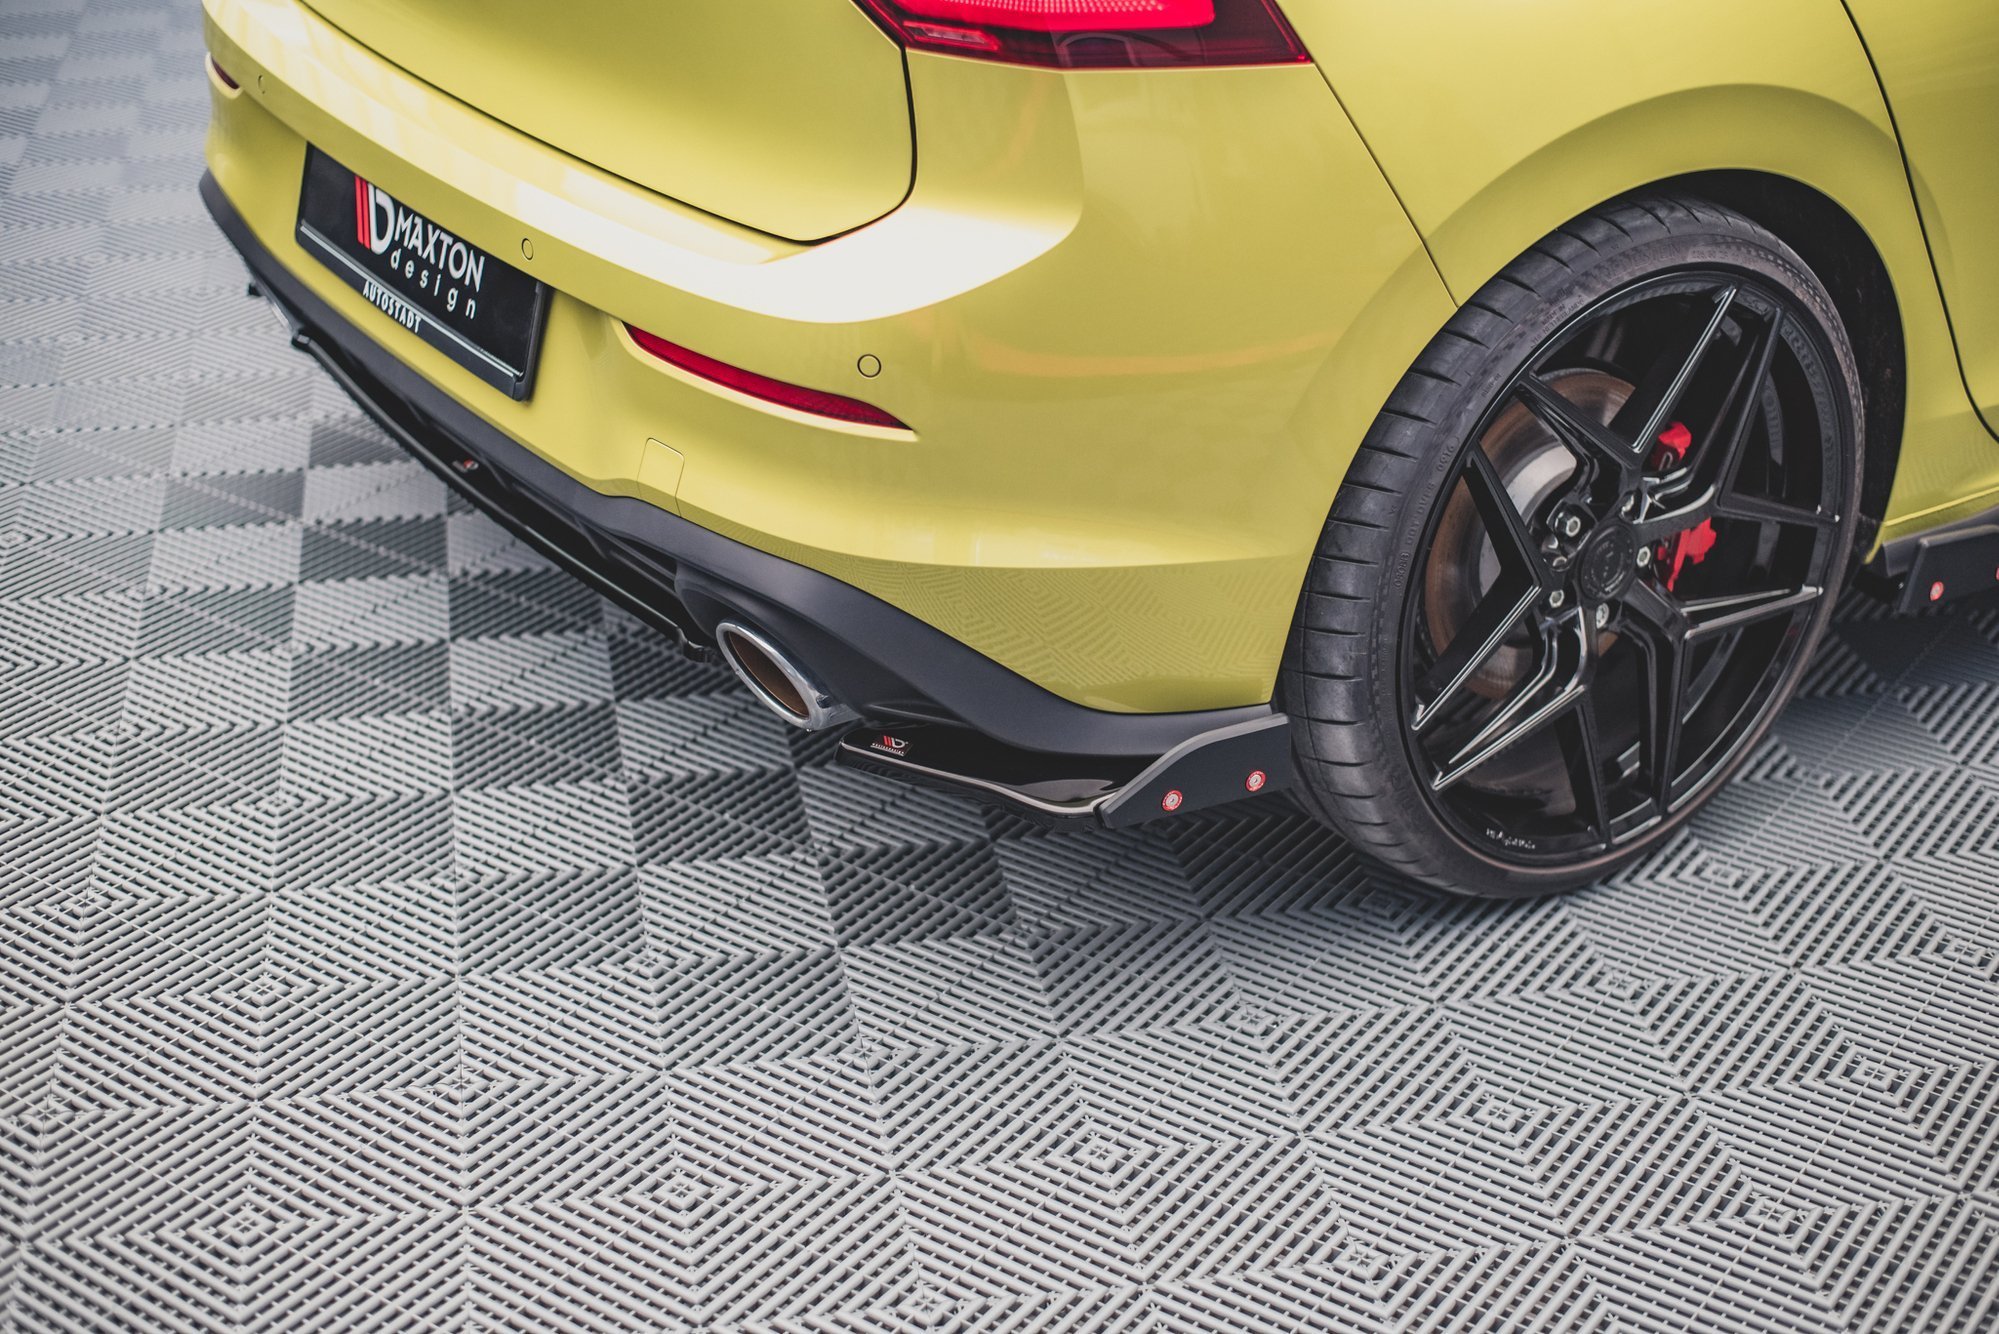 Maxton Design Heck Ansatz Flaps Diffusor V.1 +Flaps für Volkswagen Golf 8 GTI Clubsport